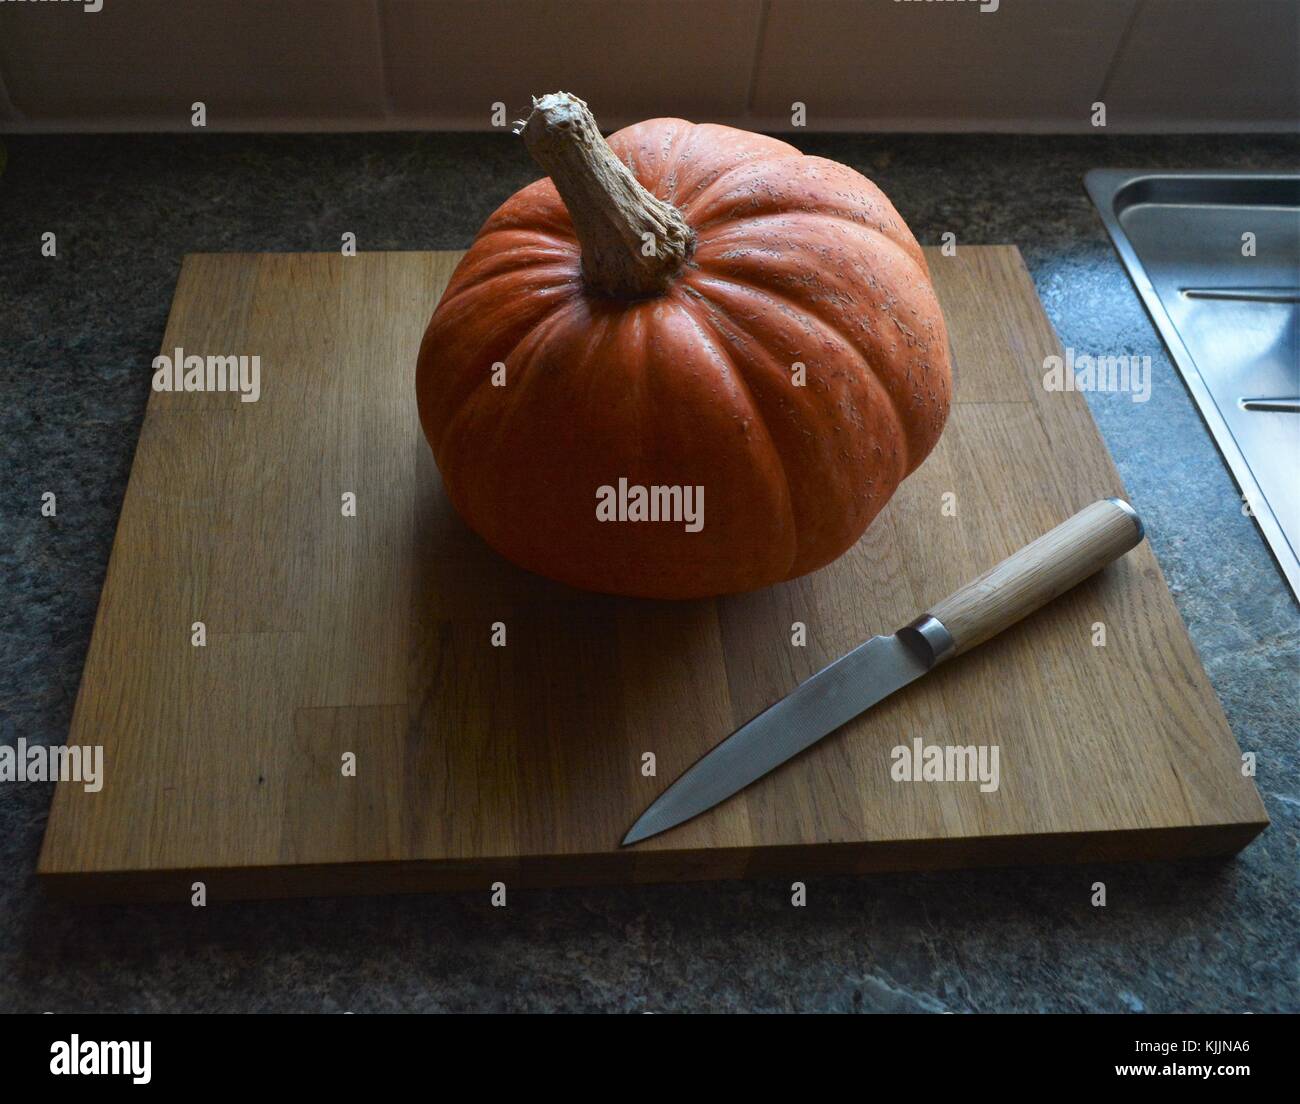 Pumpkin sur planche à découper en bambou avec couteau de cuisine sur la poignée haut Banque D'Images